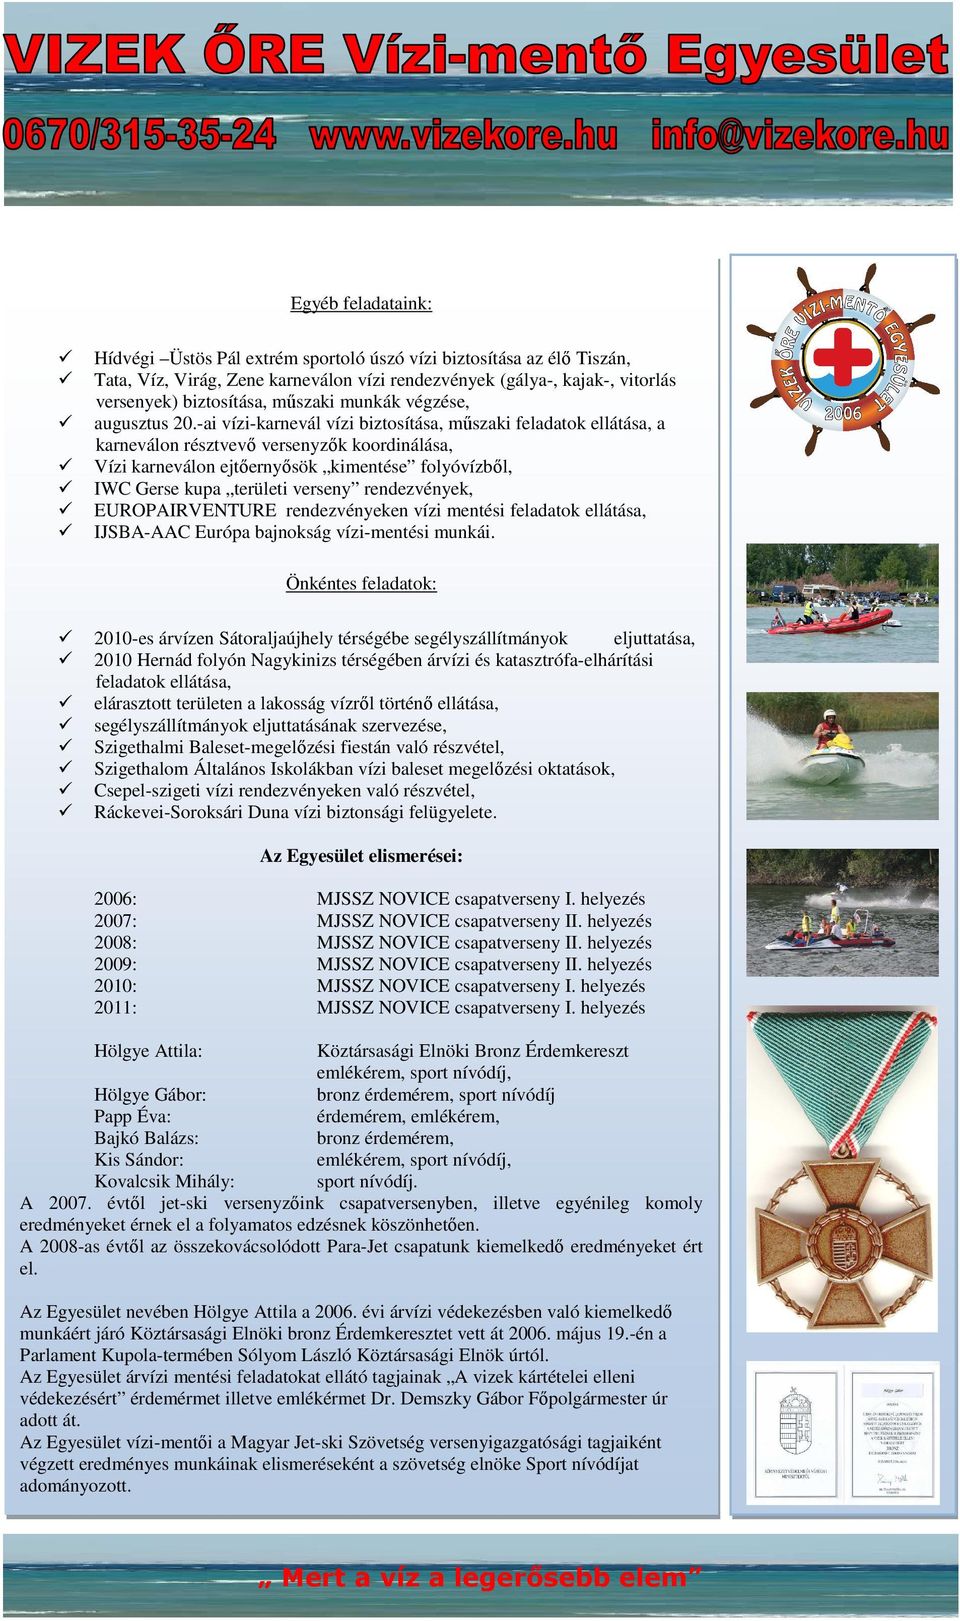 -ai vízi-karnevál vízi biztosítása, műszaki feladatok ellátása, a karneválon résztvevő versenyzők koordinálása, Vízi karneválon ejtőernyősök kimentése folyóvízből, IWC Gerse kupa területi verseny